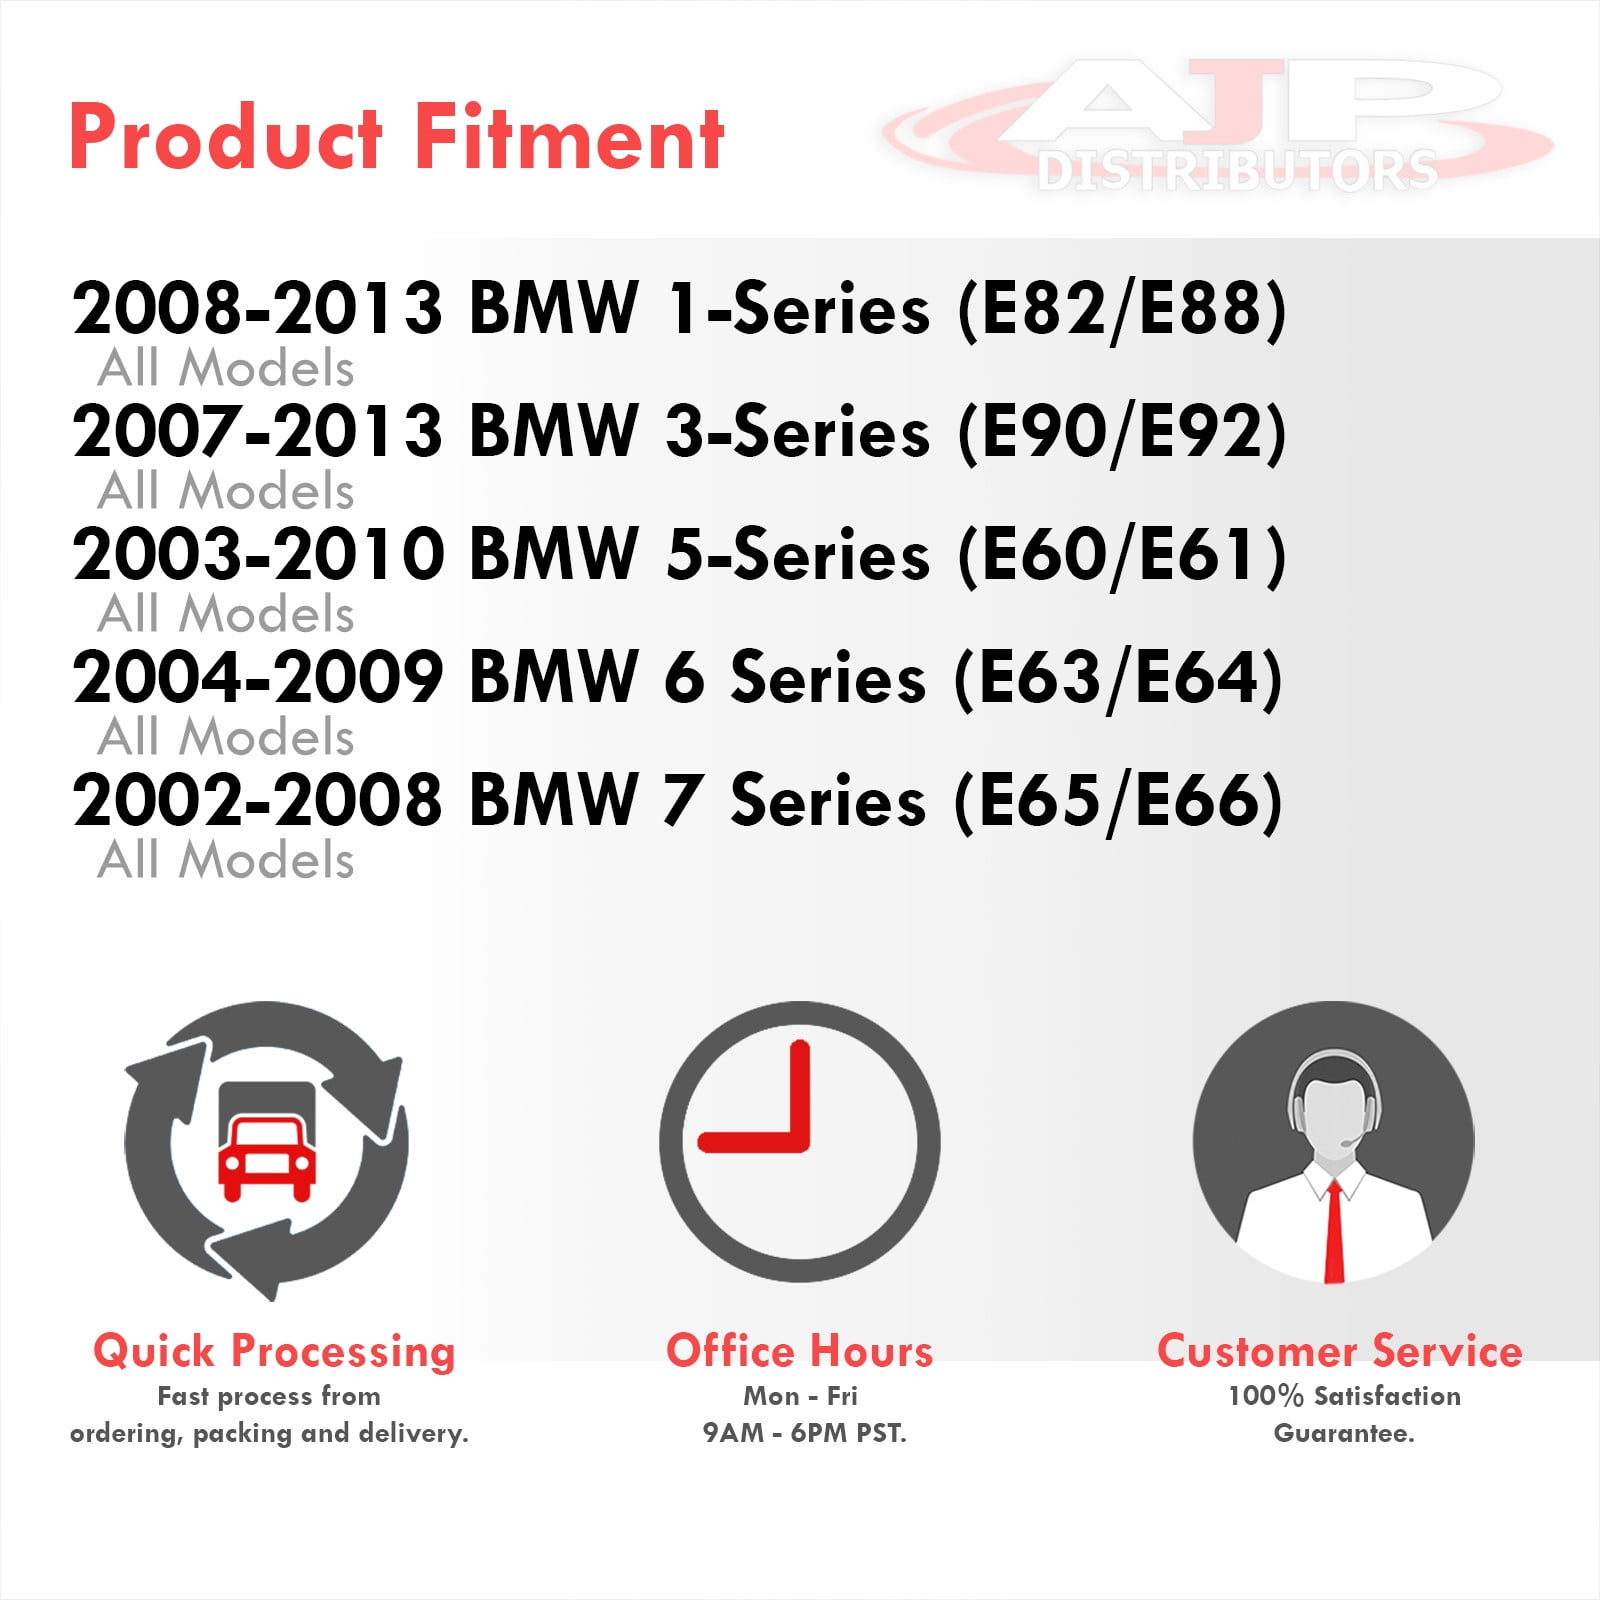 Towing hitch E65 E66 5748 - BMW Retrofit guides